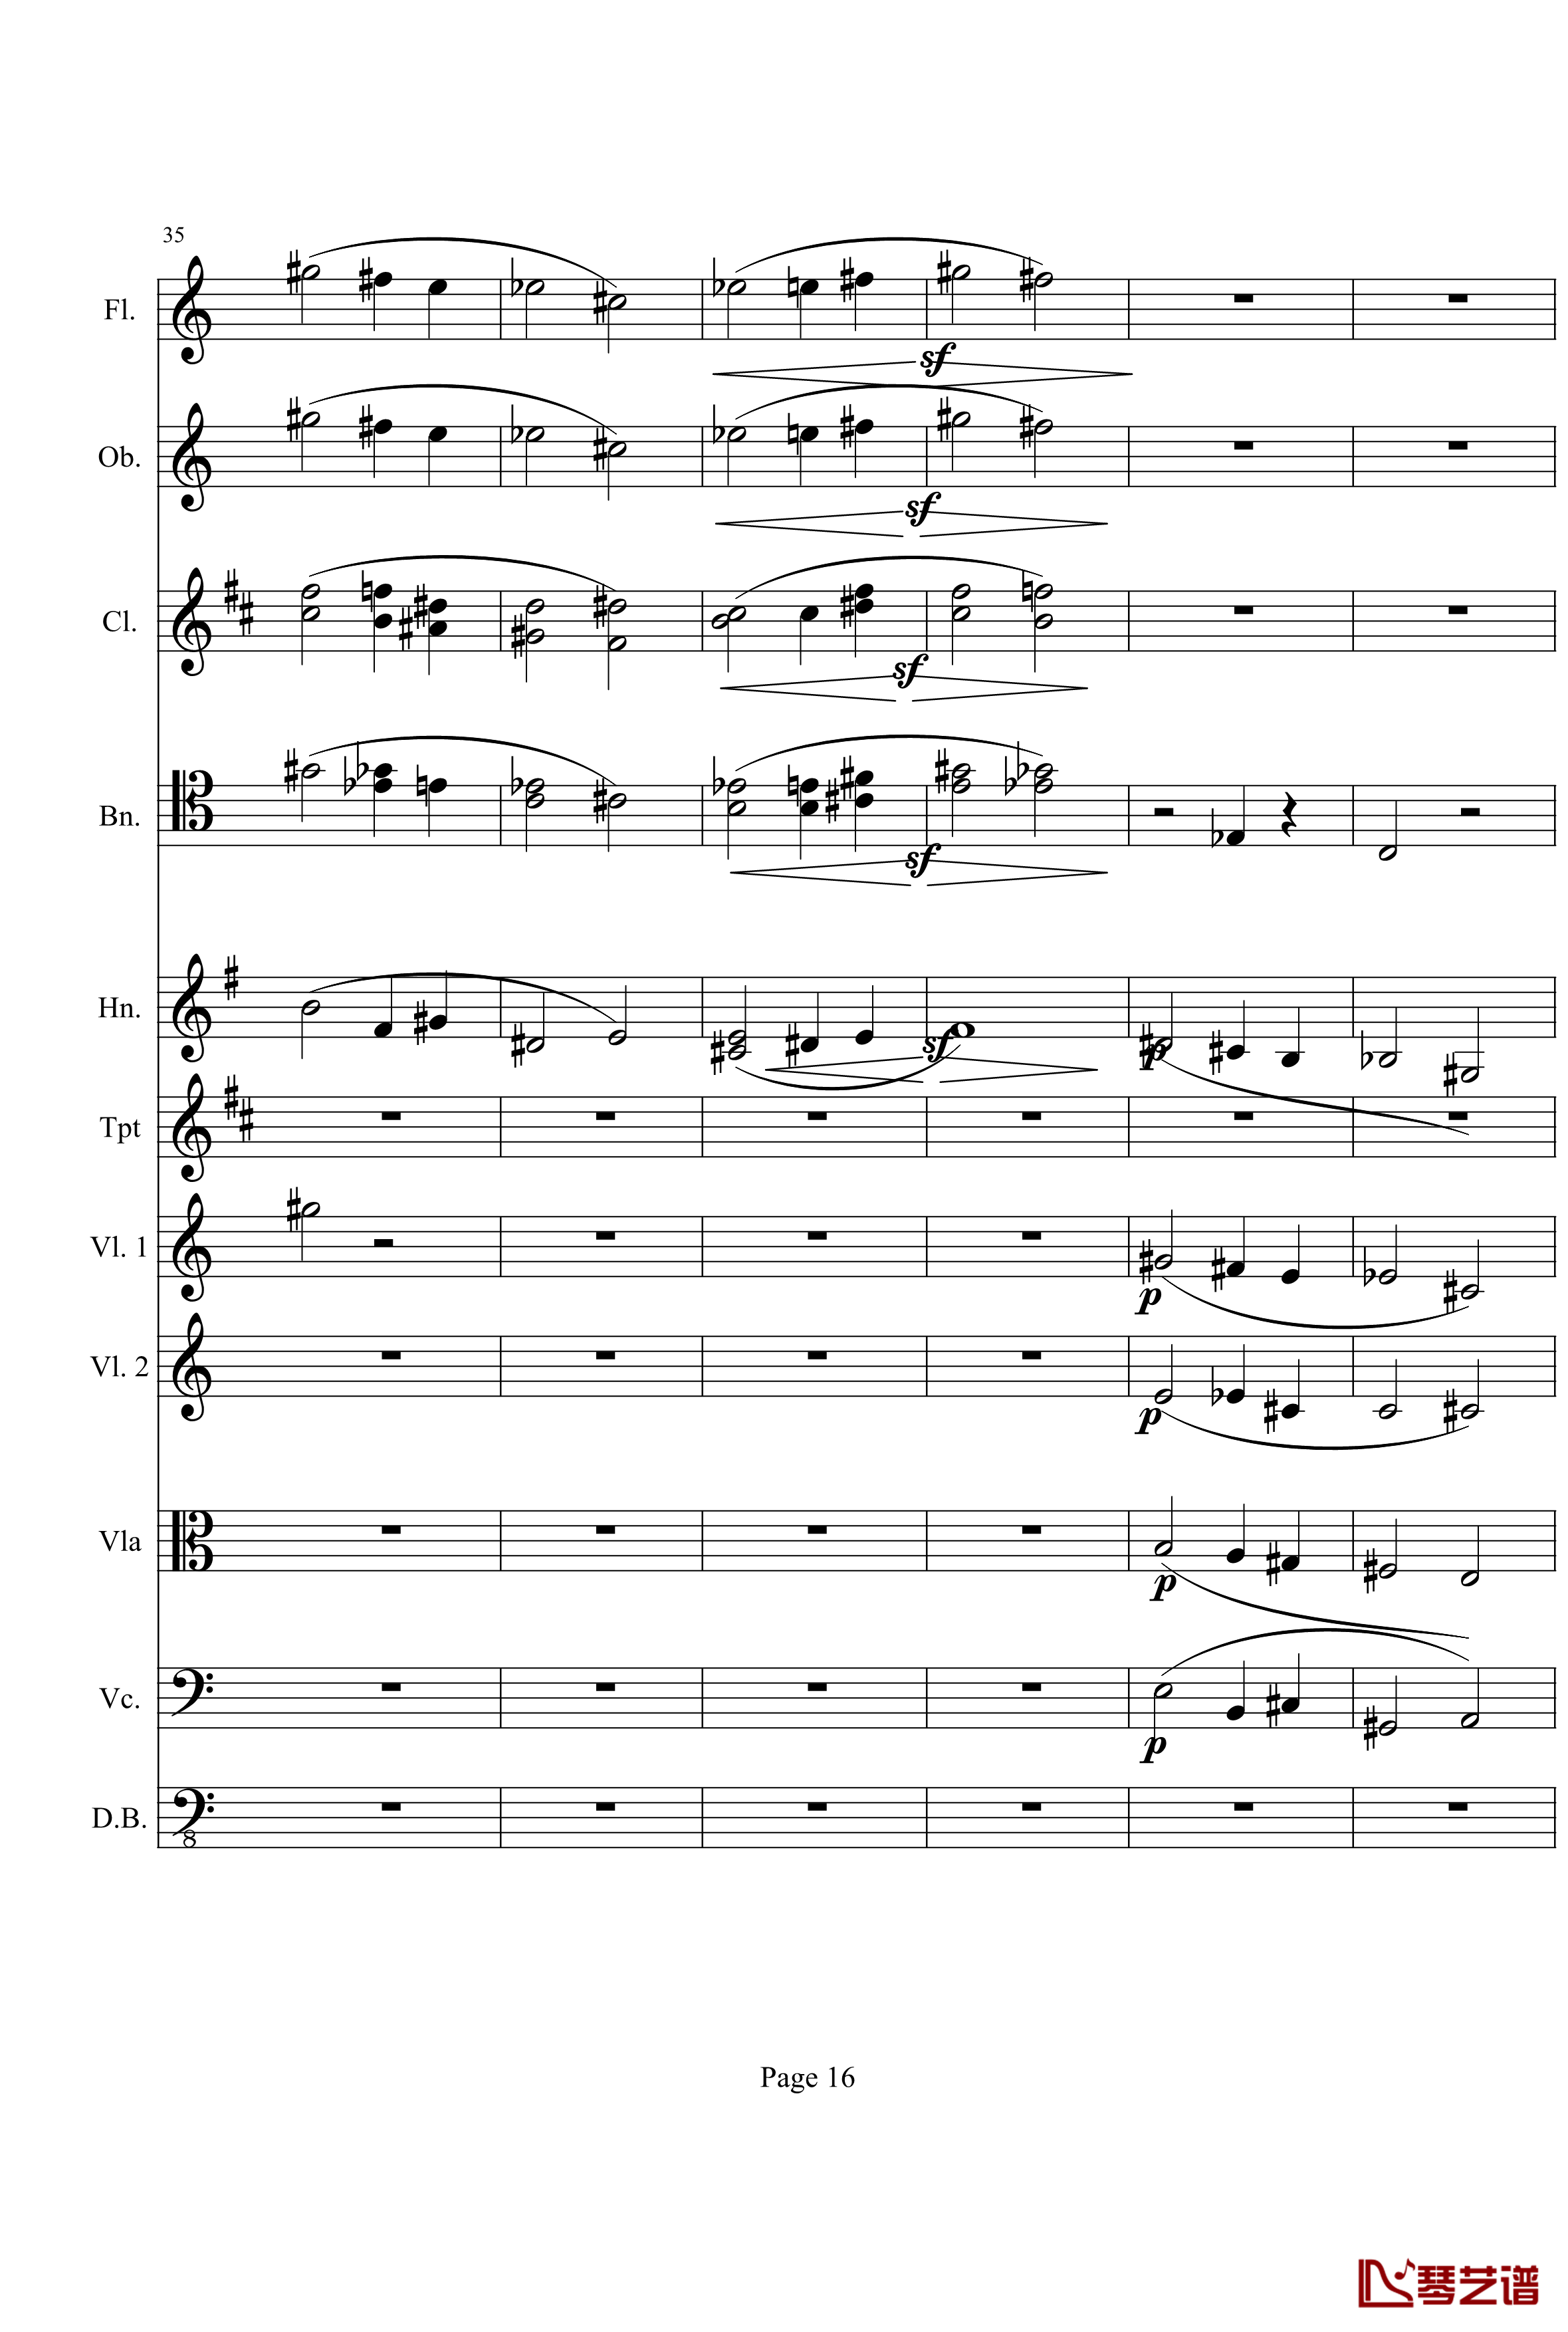 奏鸣曲之交响钢琴谱-第21-Ⅰ-贝多芬-beethoven16